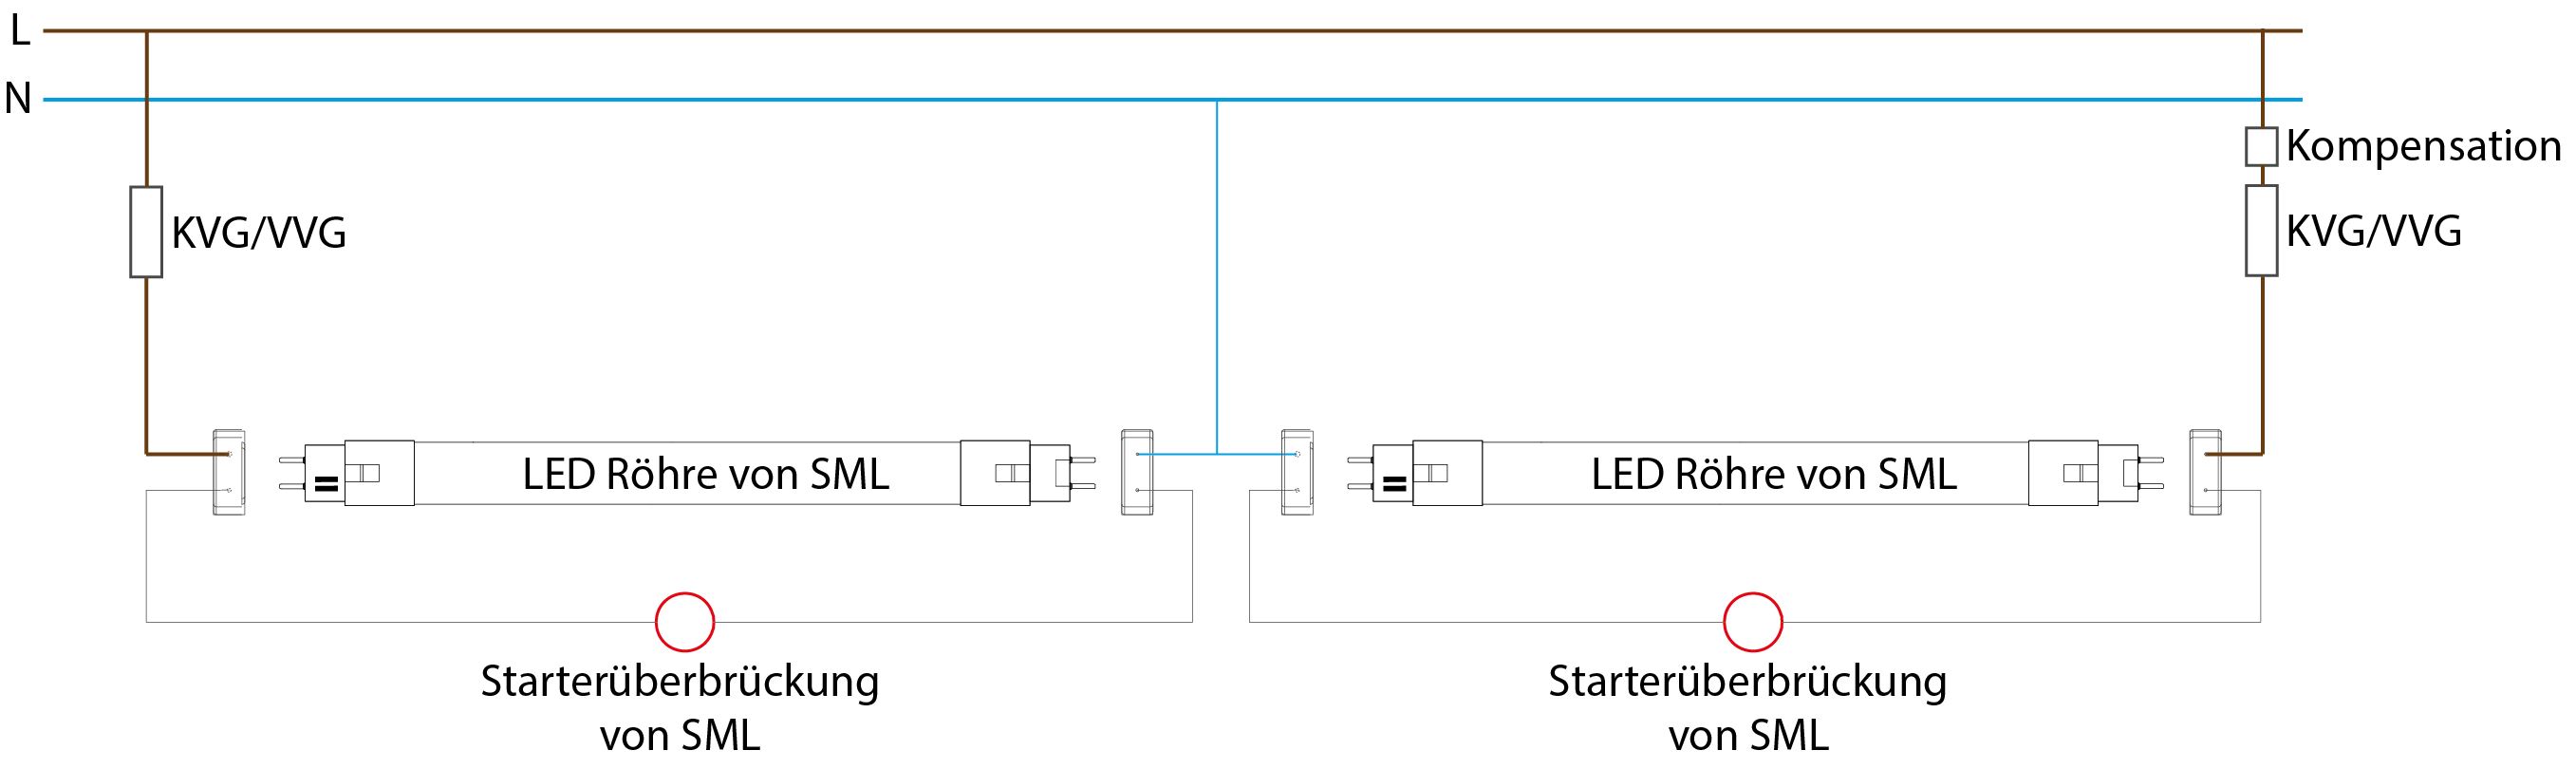 Umrüstung Leuchtstofflampe auf LED Röhre | Smart mit LED ...